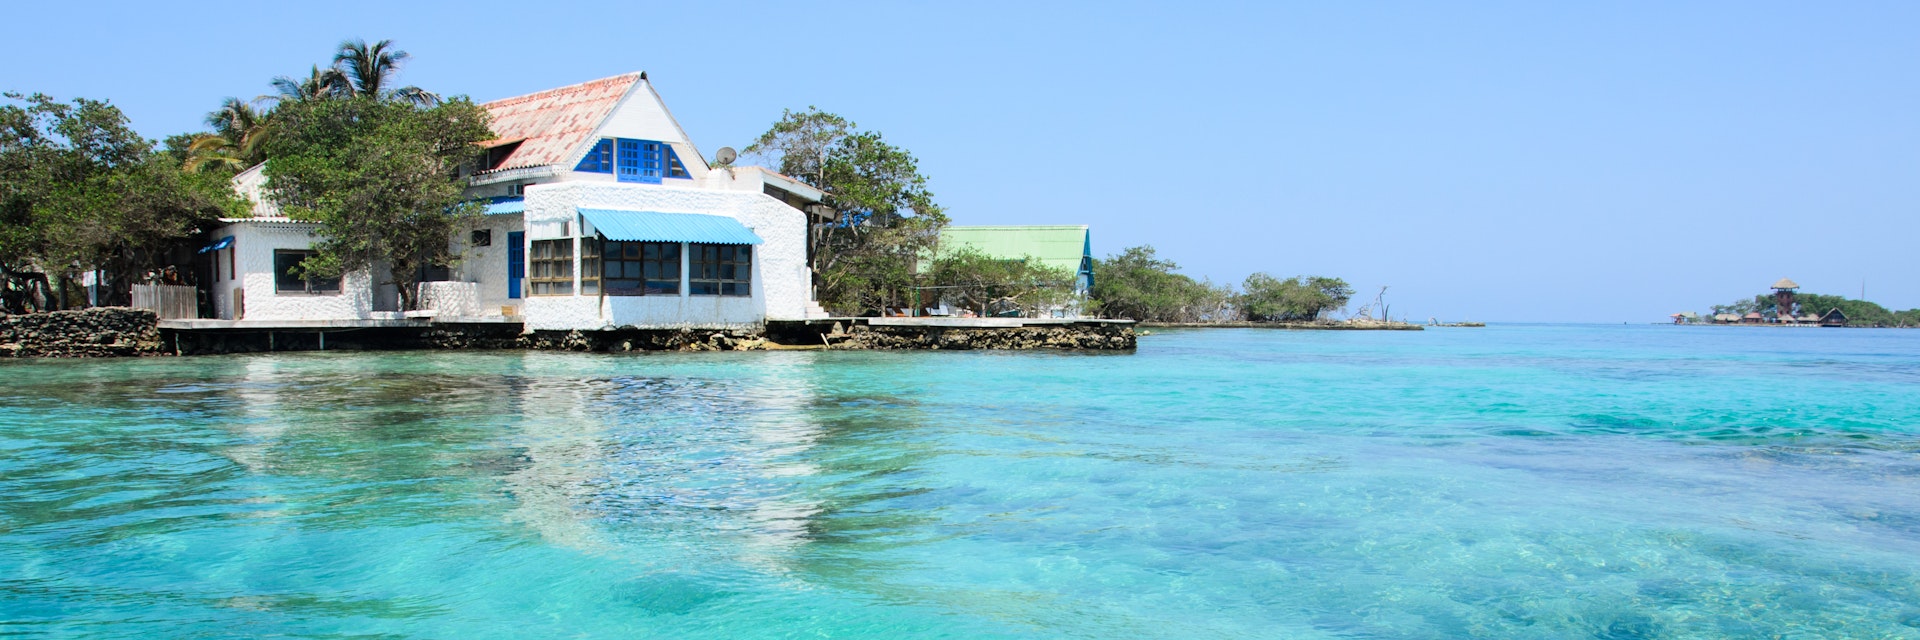 Waterffont house on Islas del Rosario